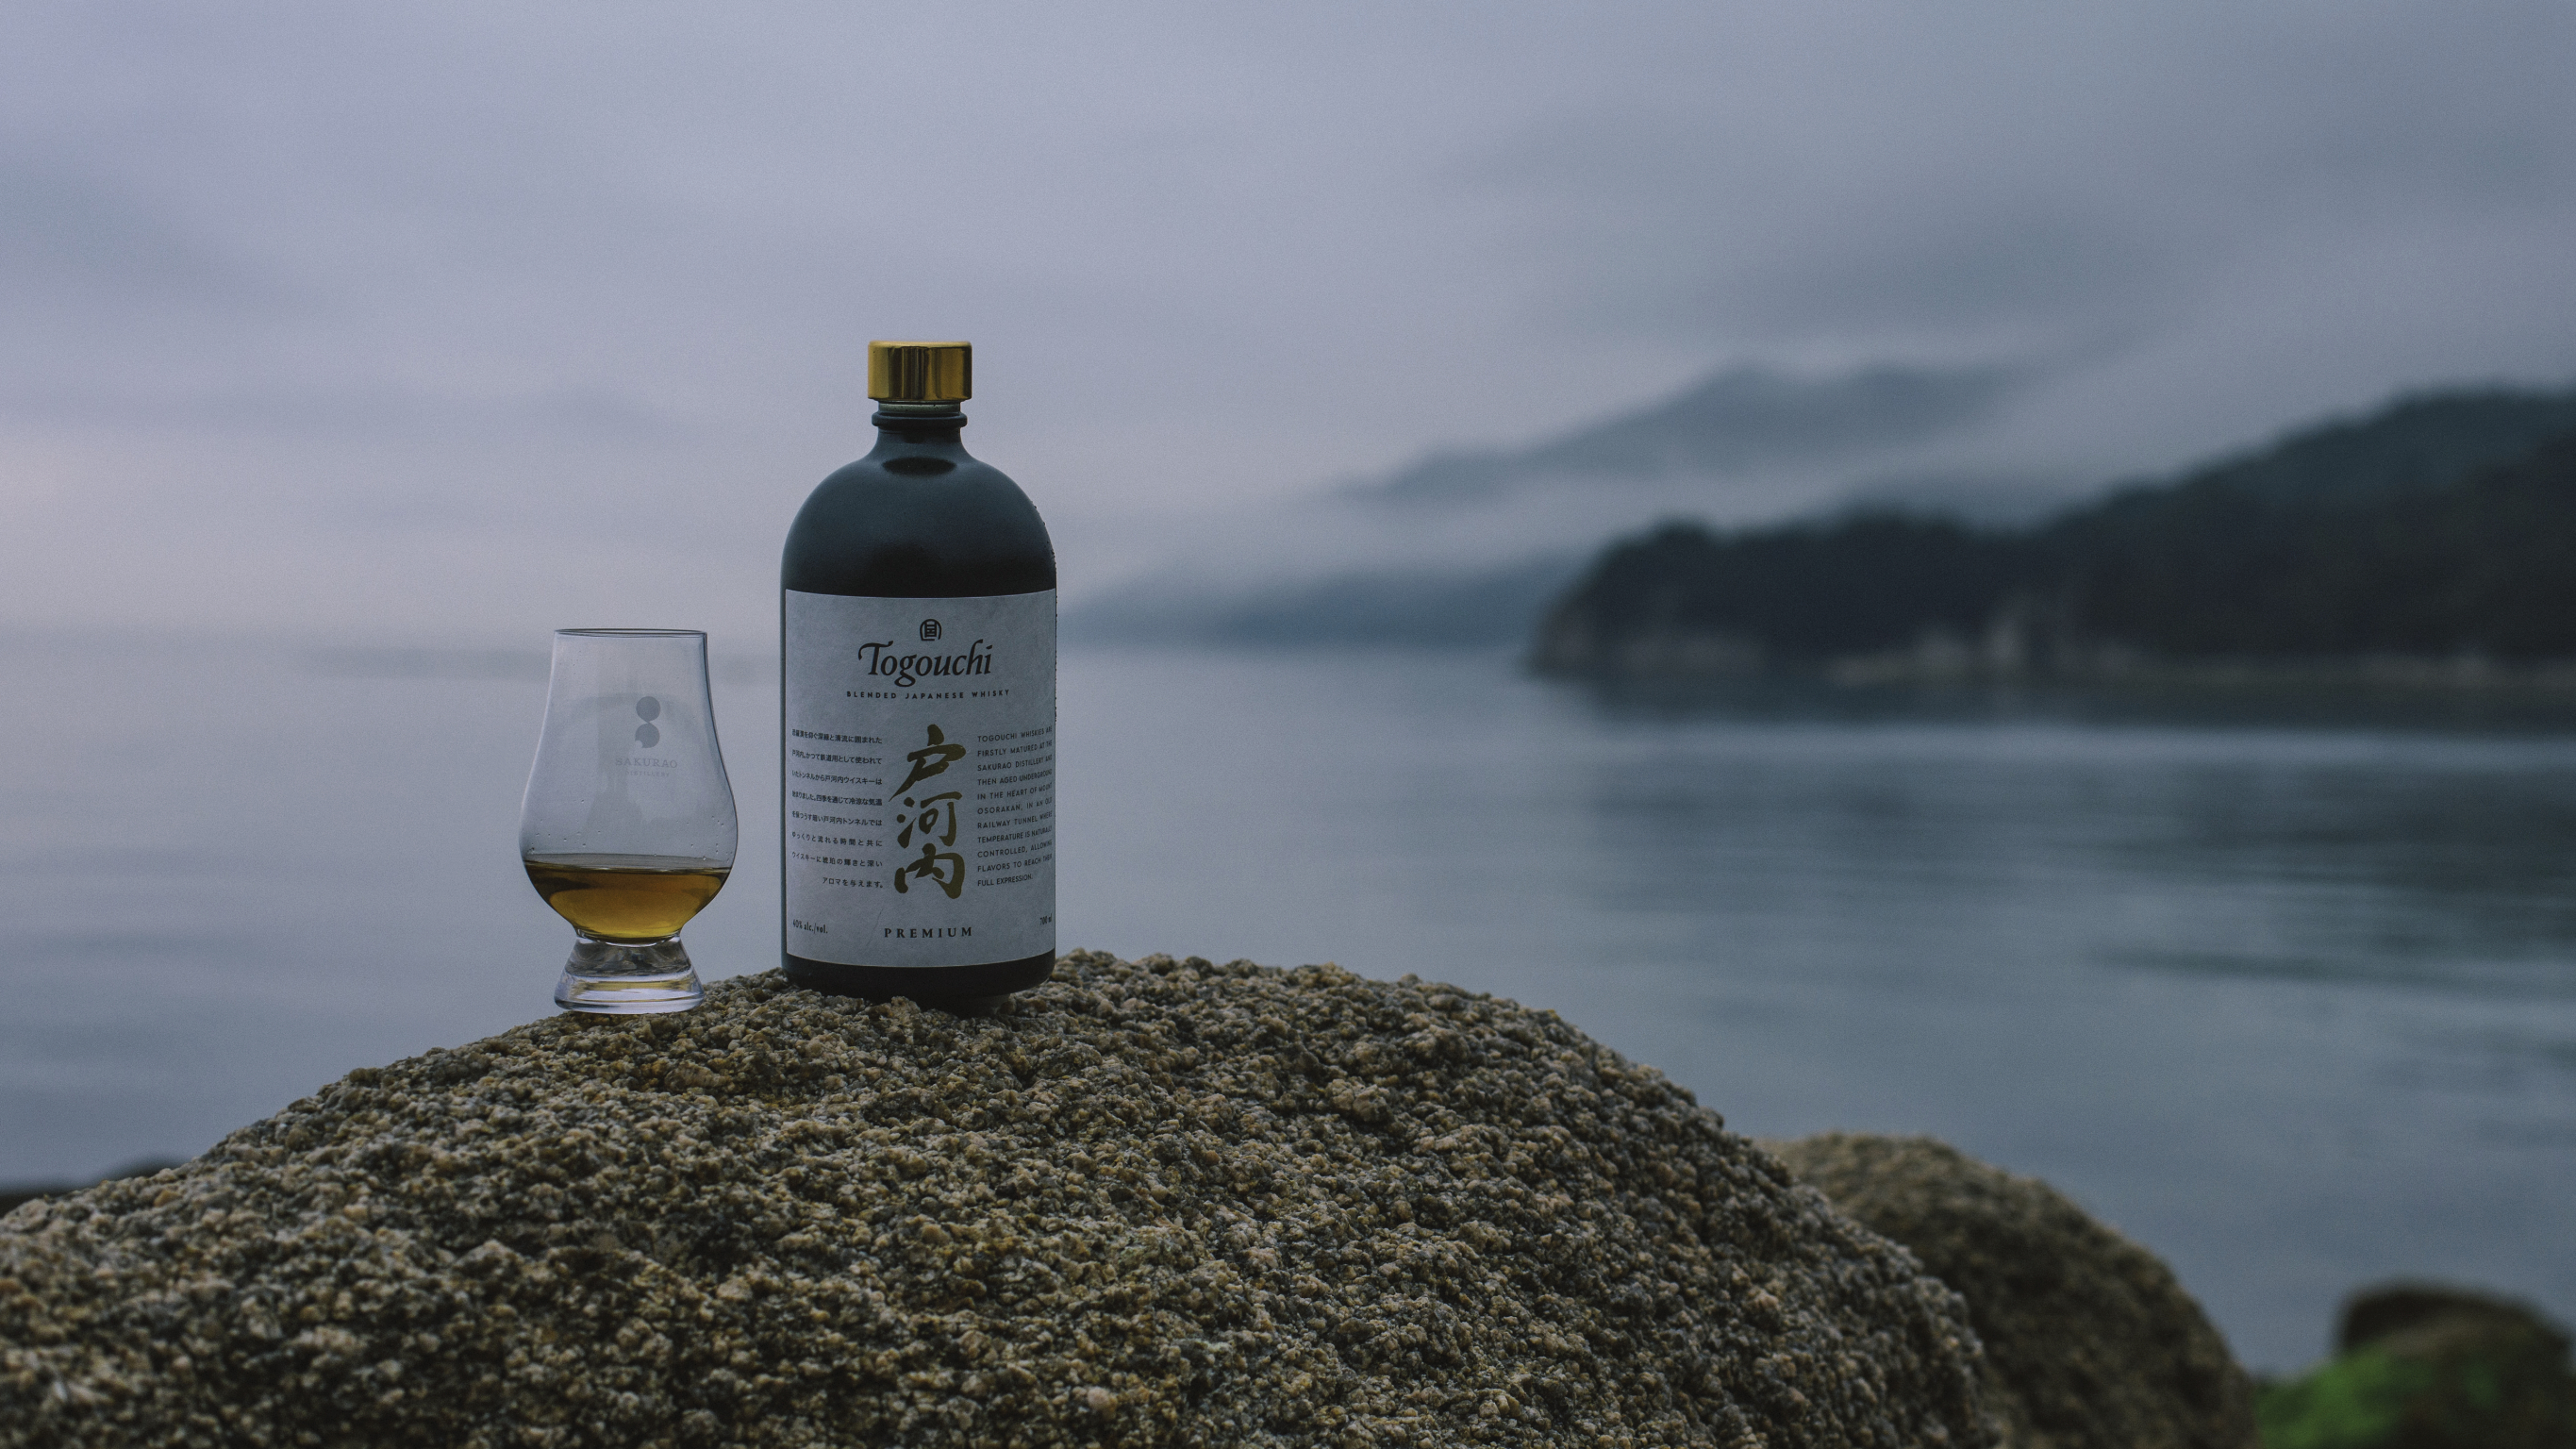 Togouchi Japanese Single Malt Whisky Sakurao Distillery